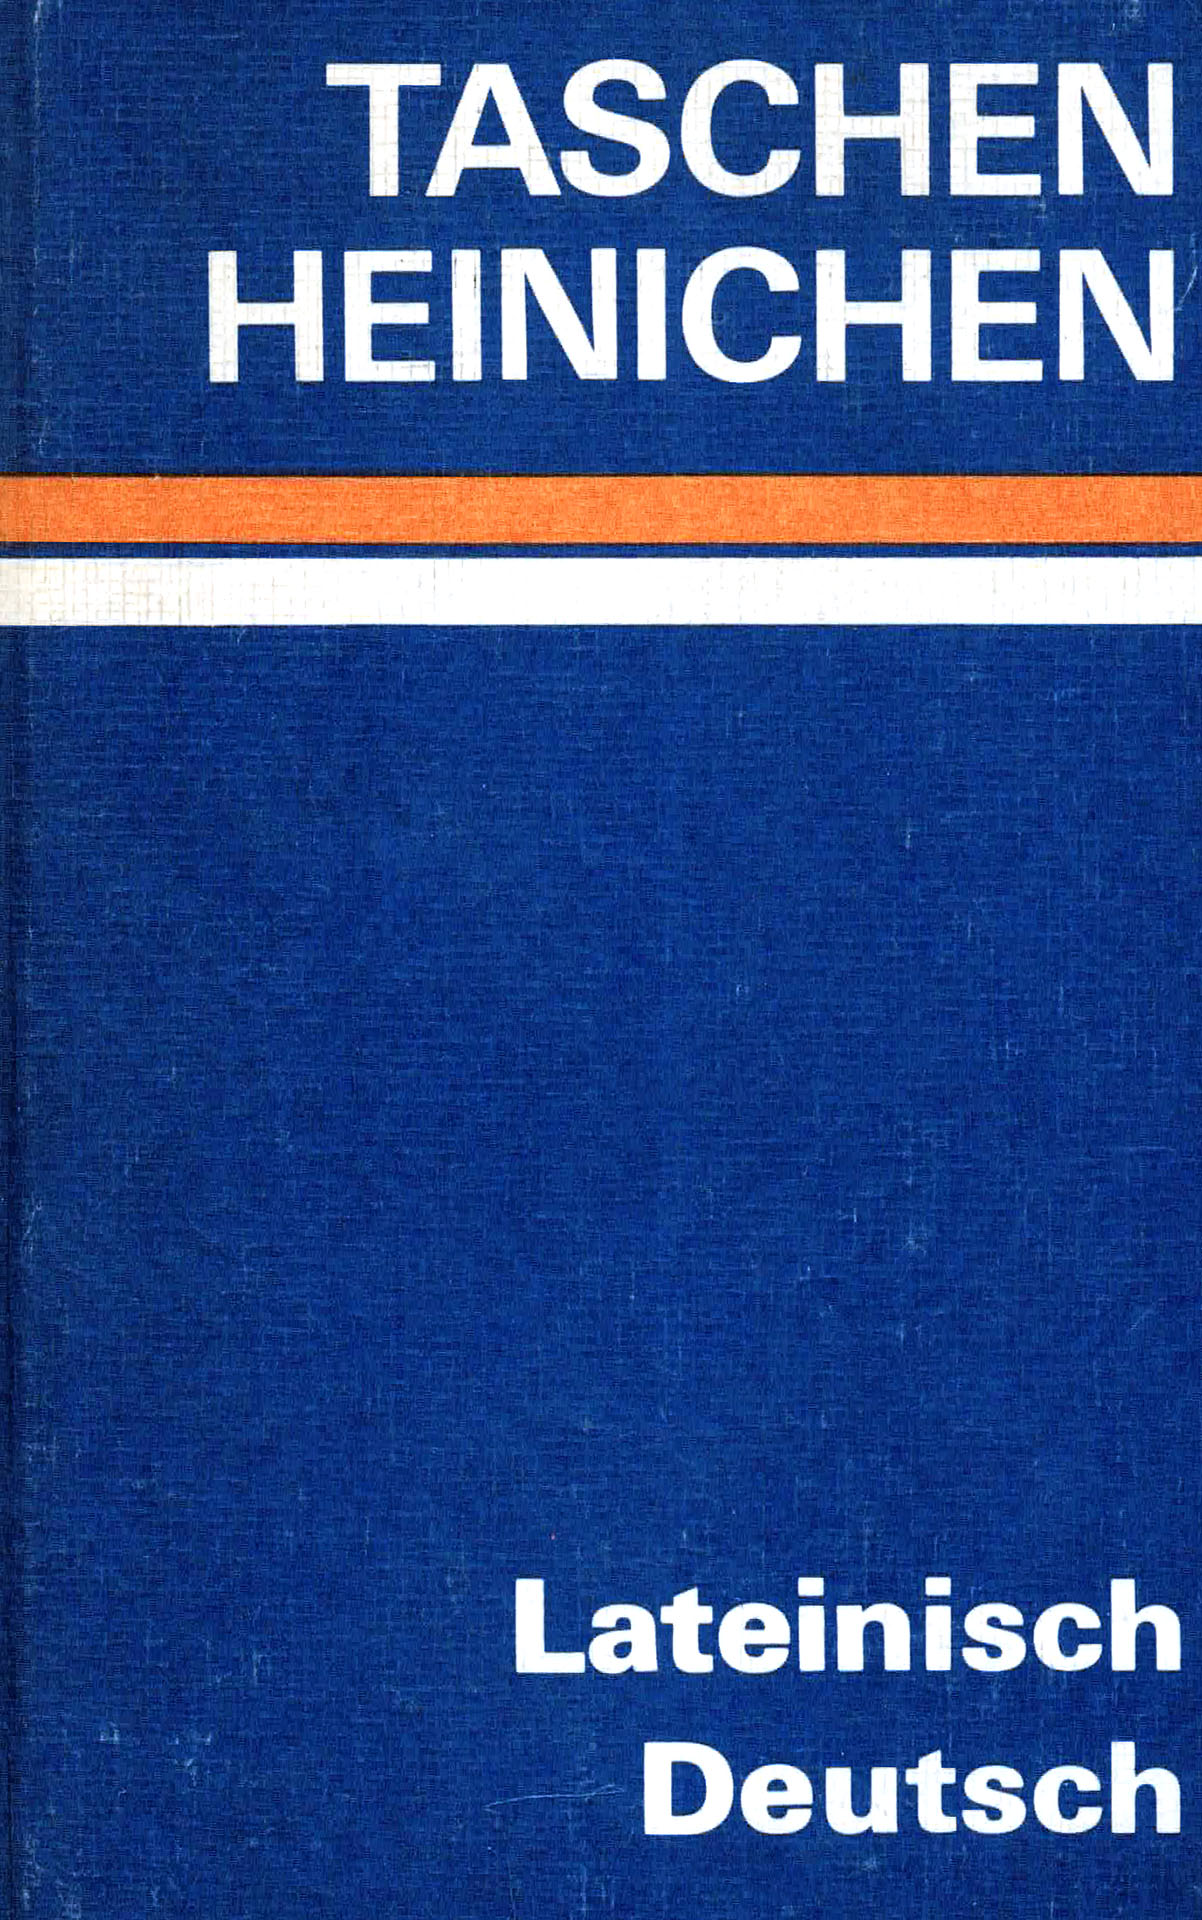 Taschen-Heinichen Lateinisch - Deutsch - Heinichen, F.A.